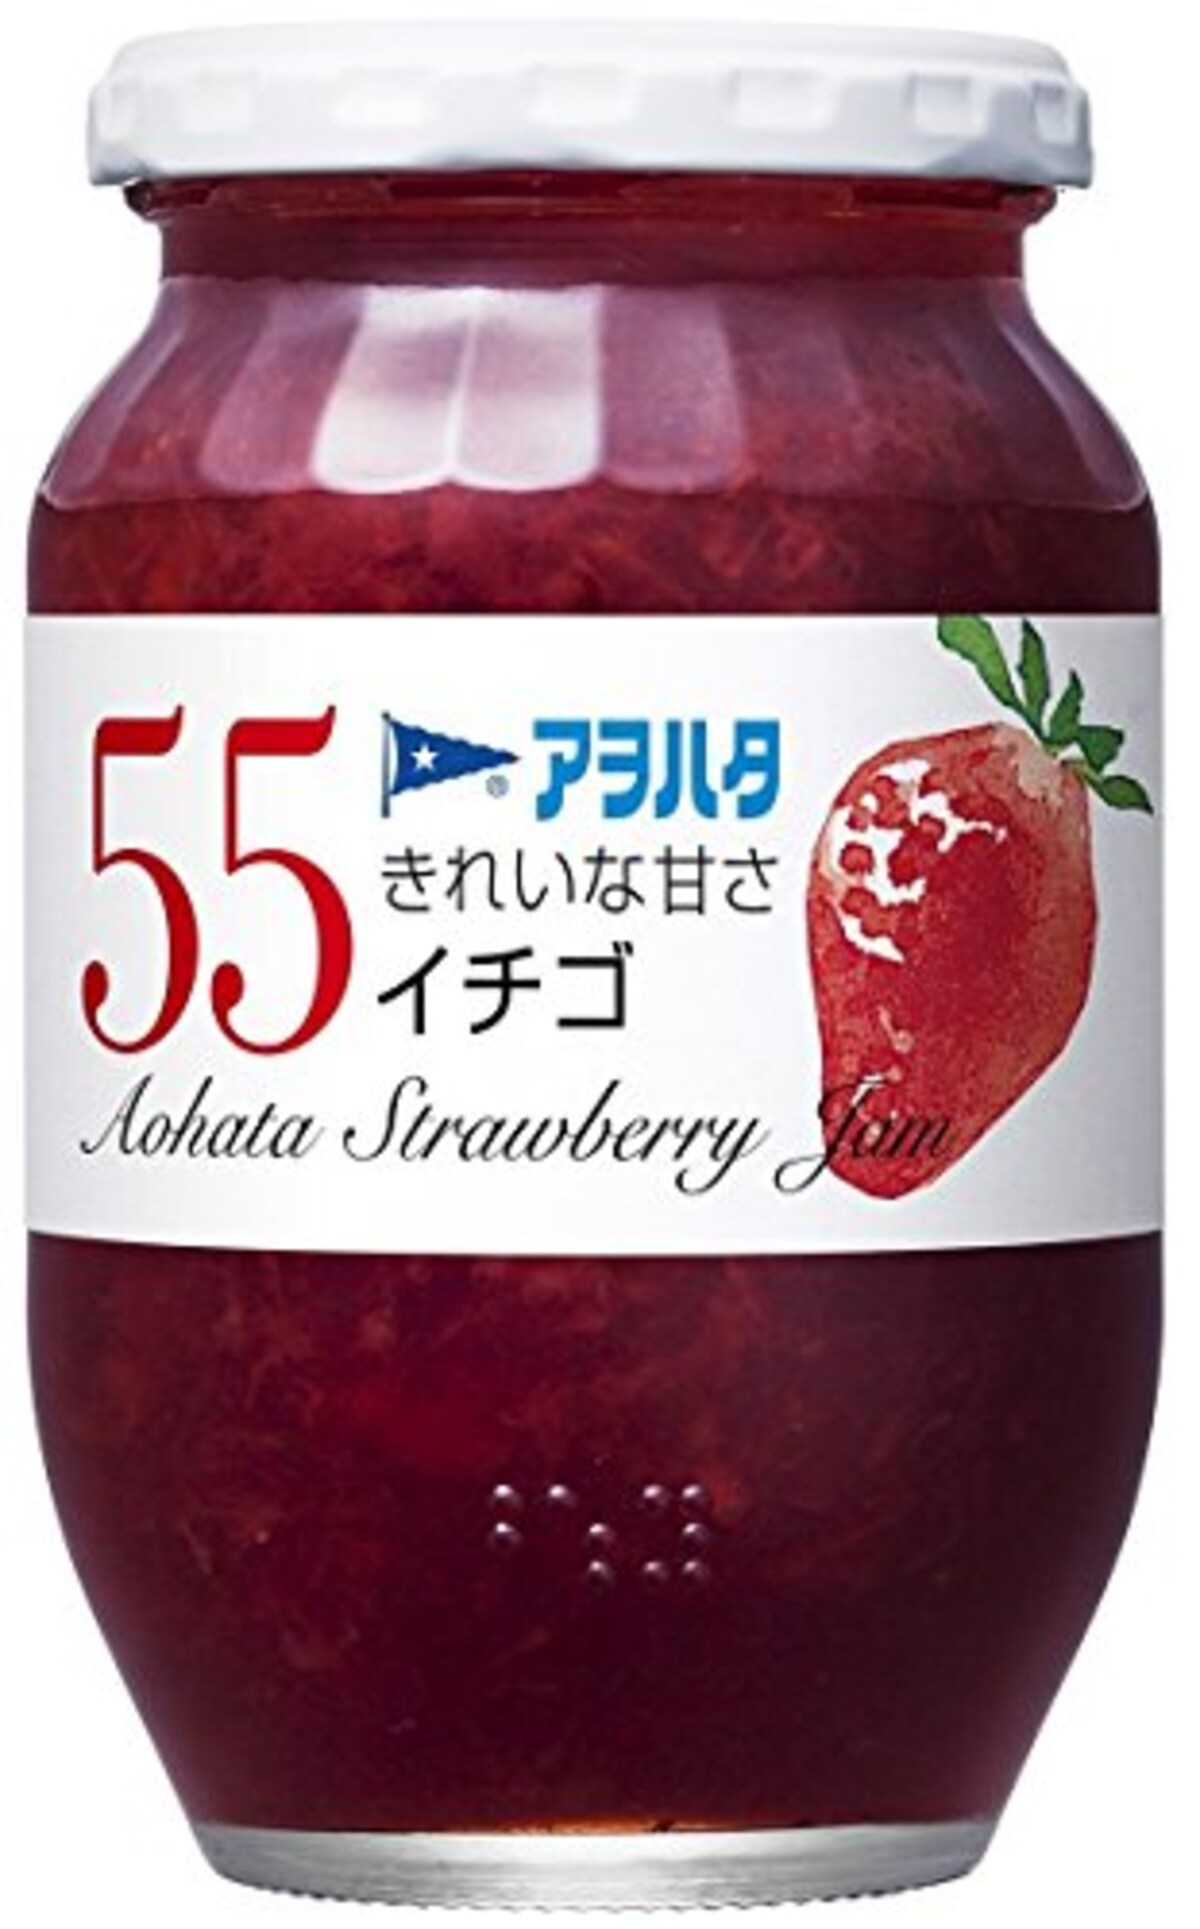 55 イチゴ